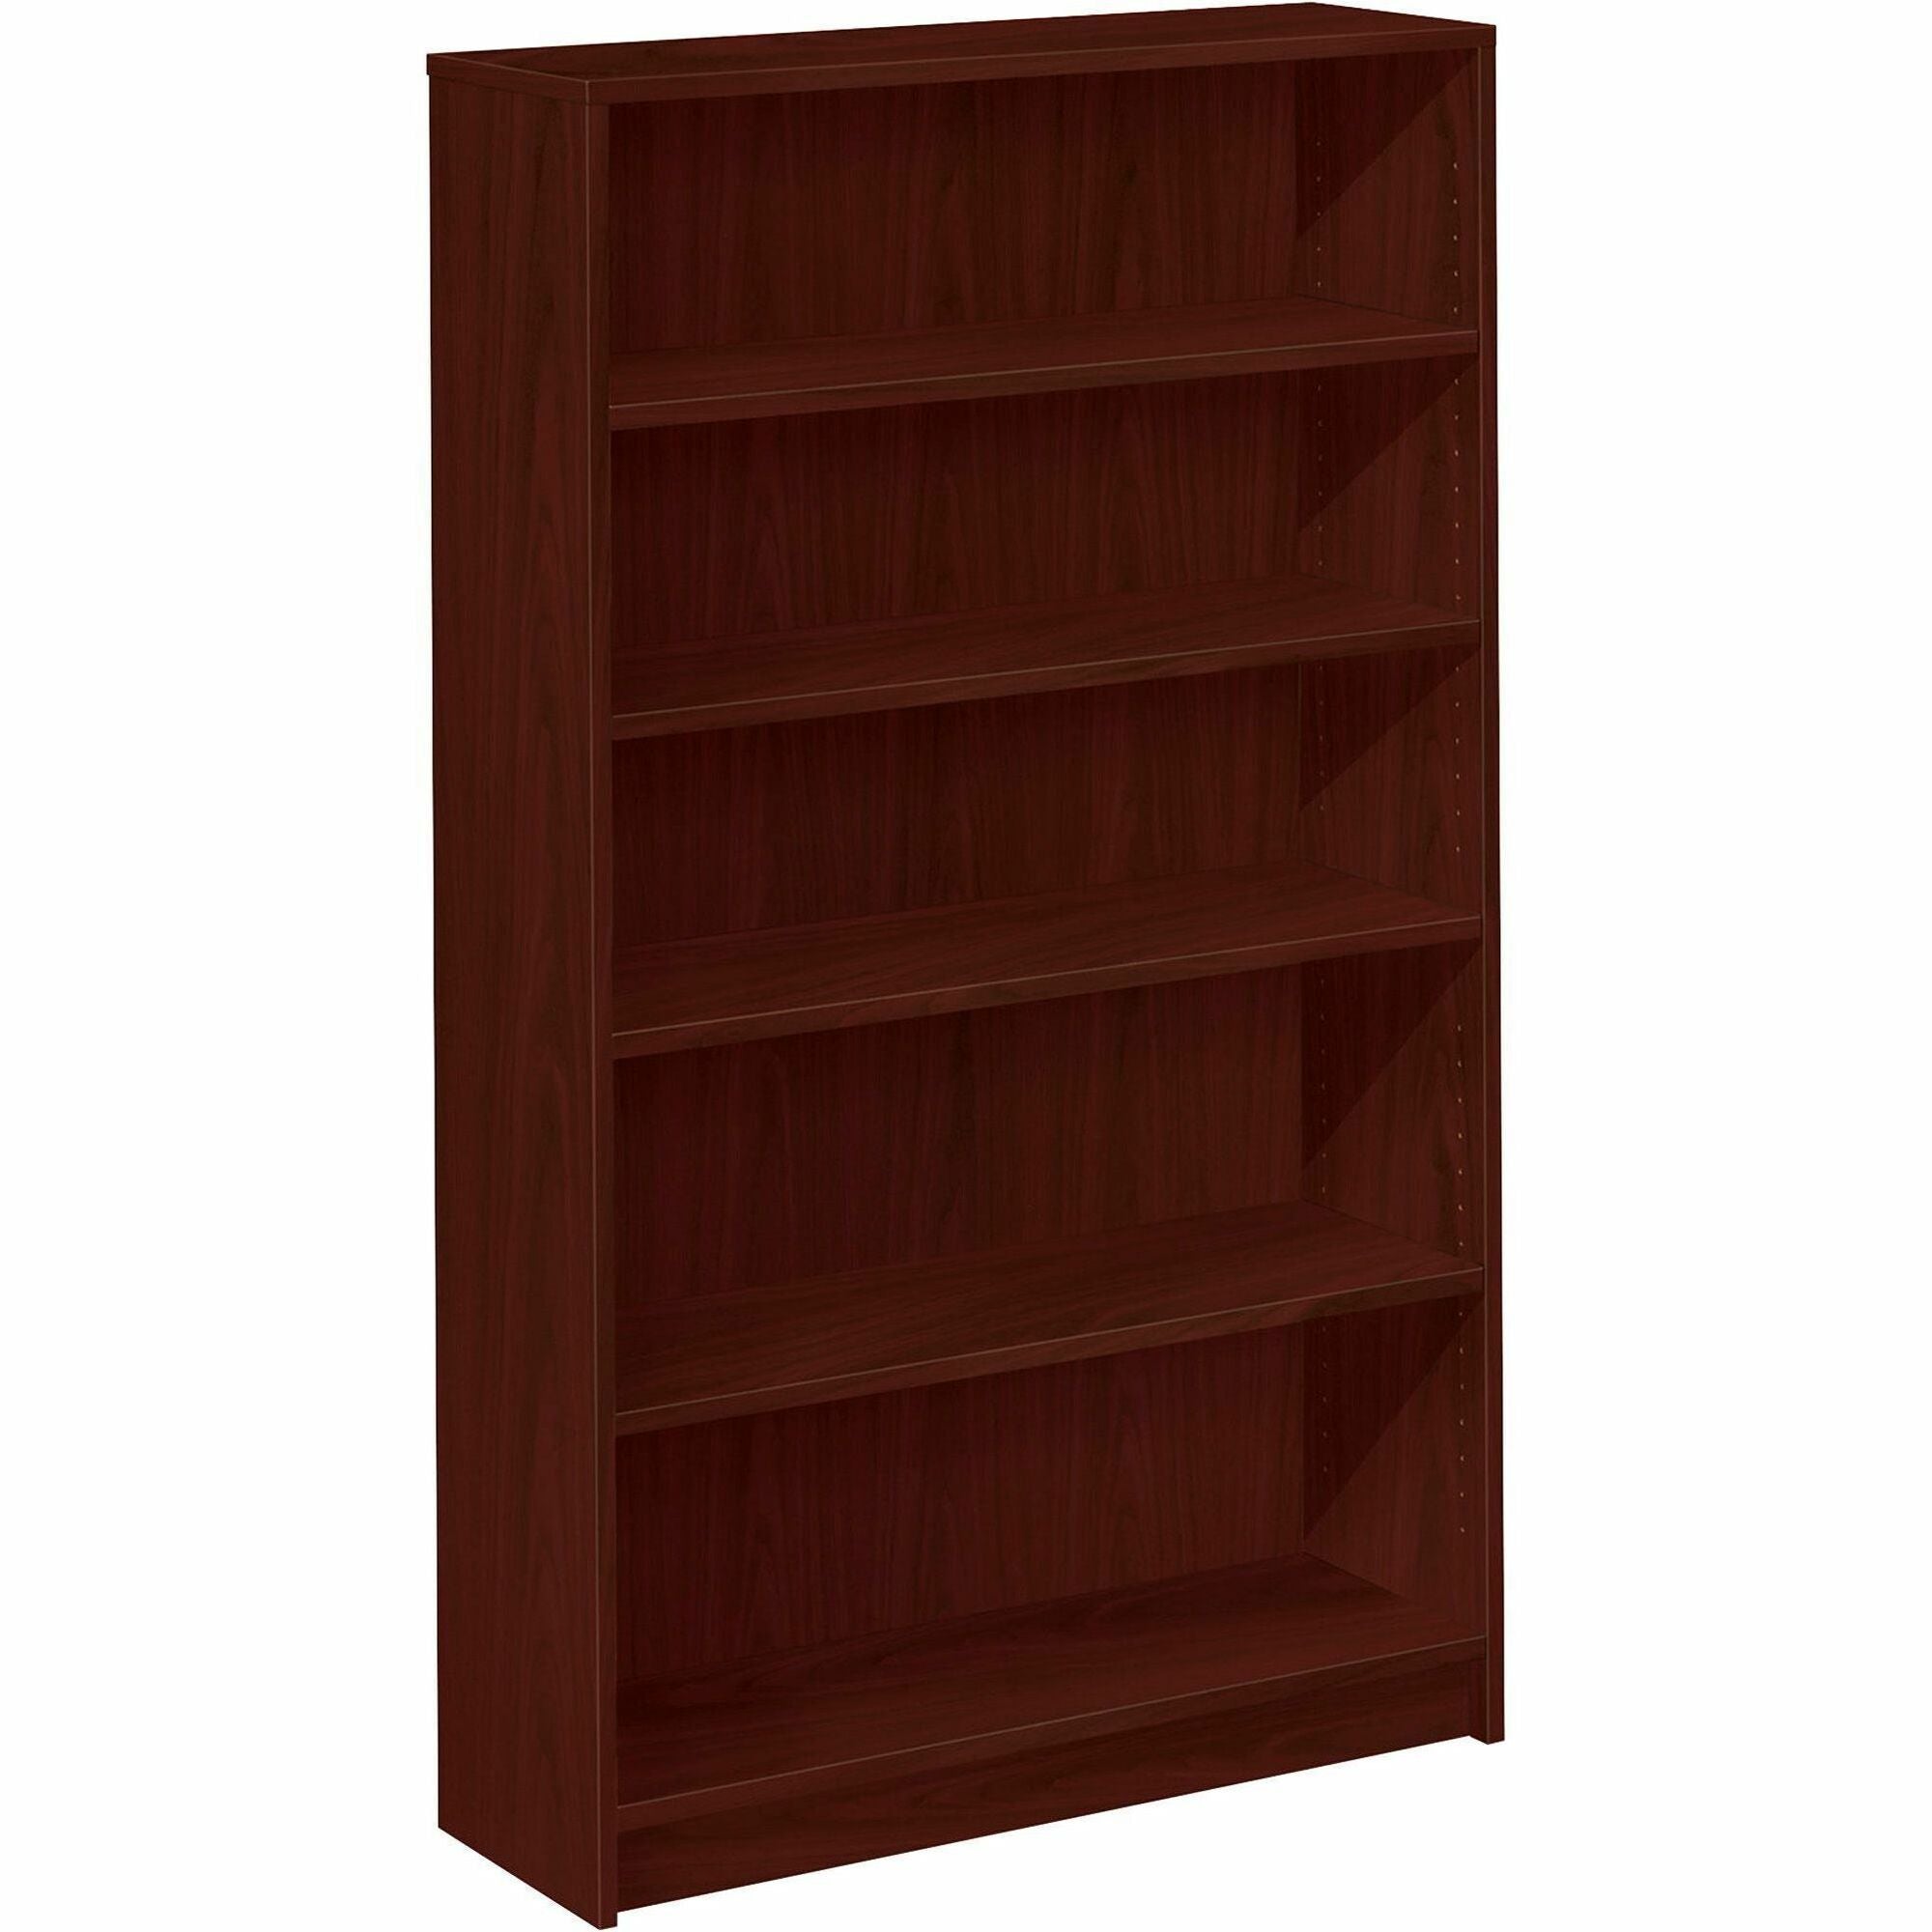 HON 1870 H1875 Bookcase - 36" x 11.5"60.1" - 5 Shelve(s) - Finish: Mahogany - 